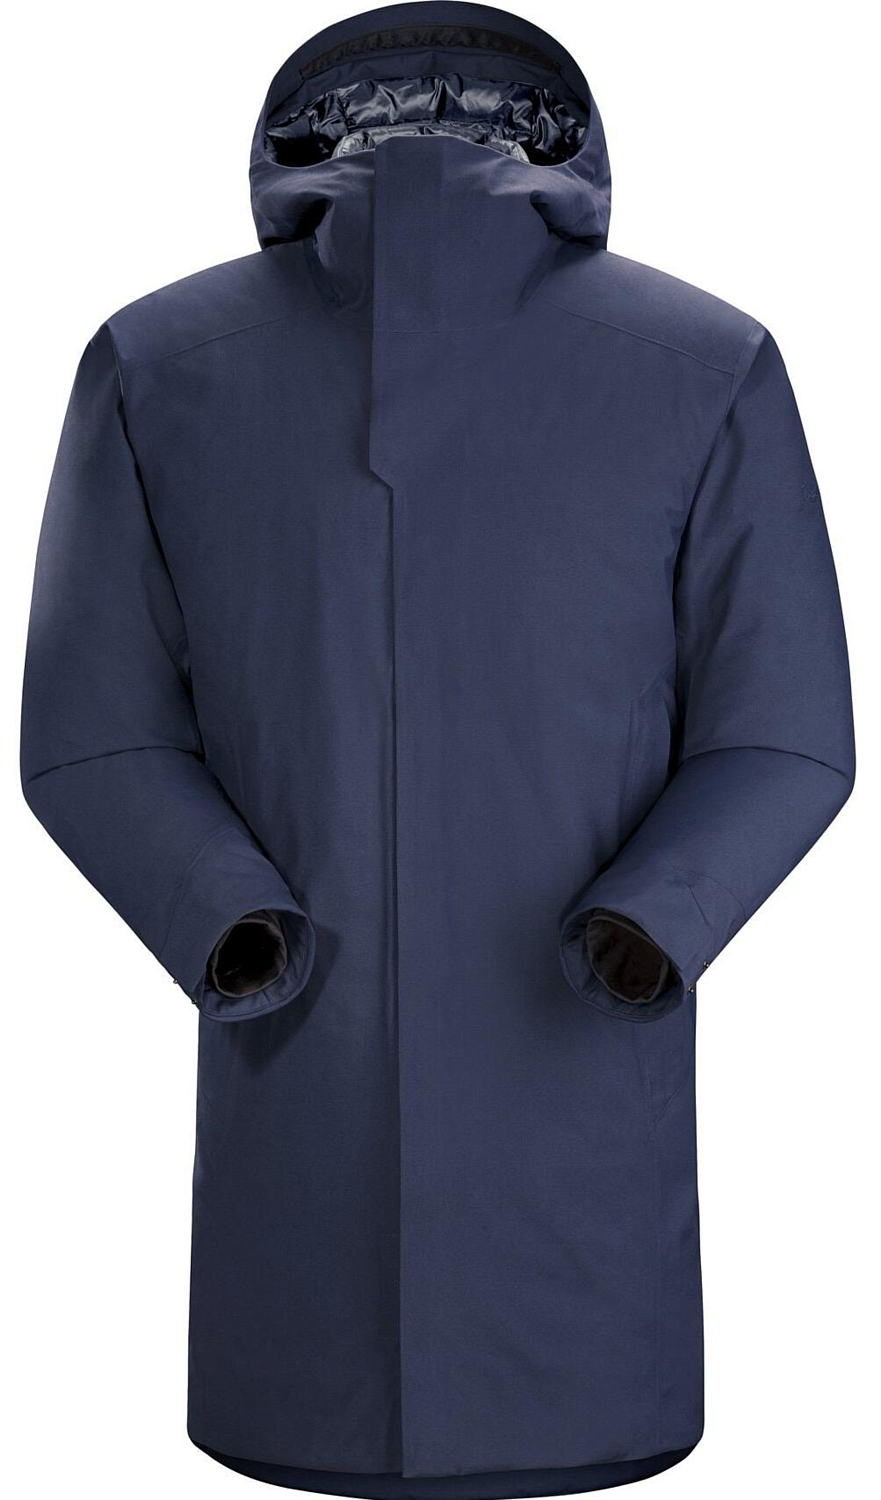 Куртка для активного отдыха Arcteryx 2020-21 Thorsen Parka Men's Cobalt Moon